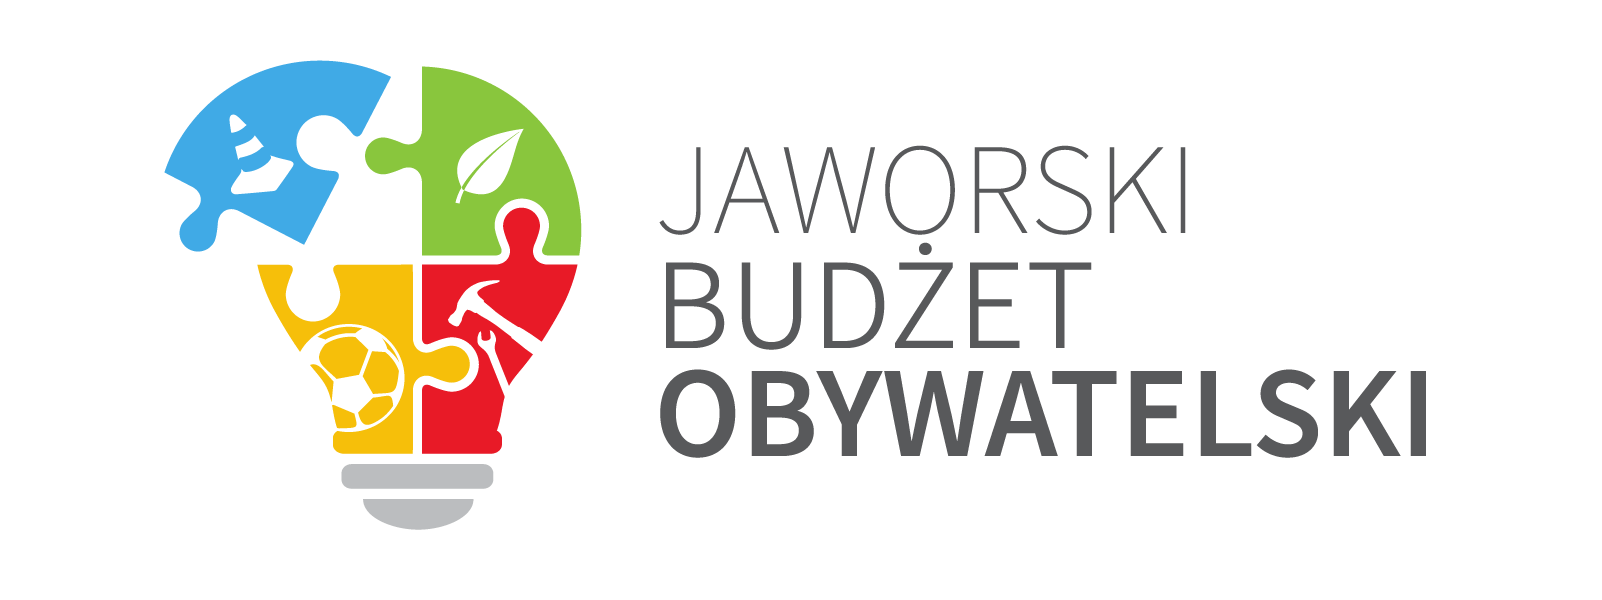 [JBO]: II Edycja Jaworskiego Budżetu Obywatelskiego 2020 zostaje zawieszona!